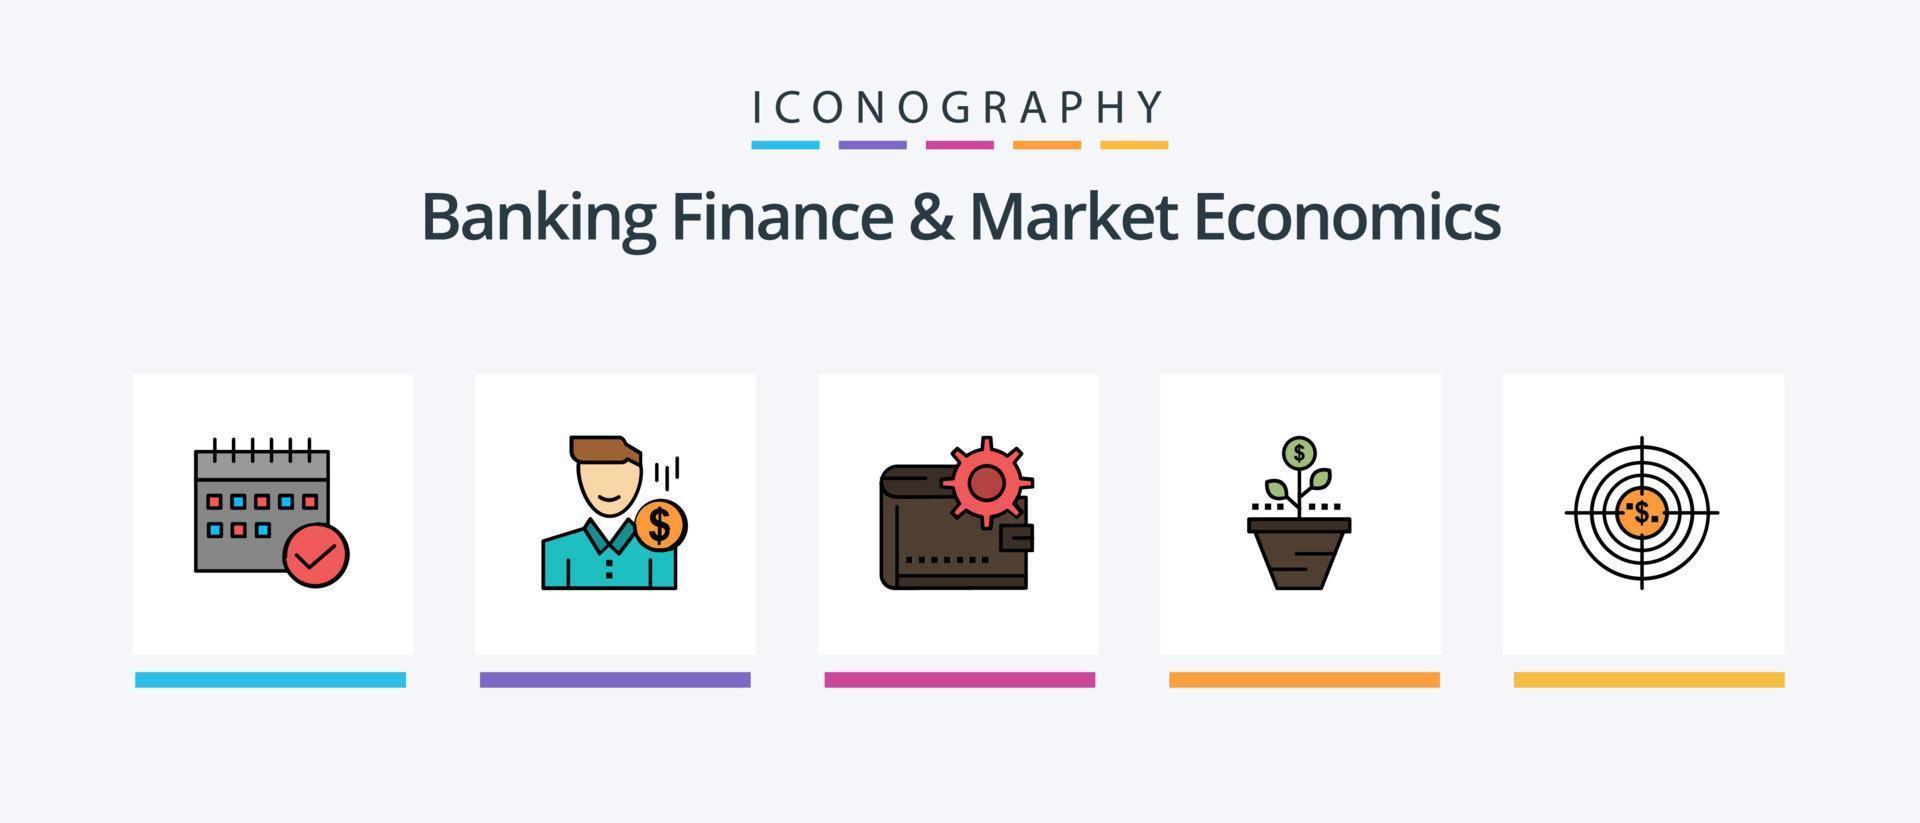 la línea de finanzas bancarias y economía de mercado llenó un paquete de 5 iconos, incluido el crecimiento. tiempo. dinero en efectivo. taza. café. diseño de iconos creativos vector